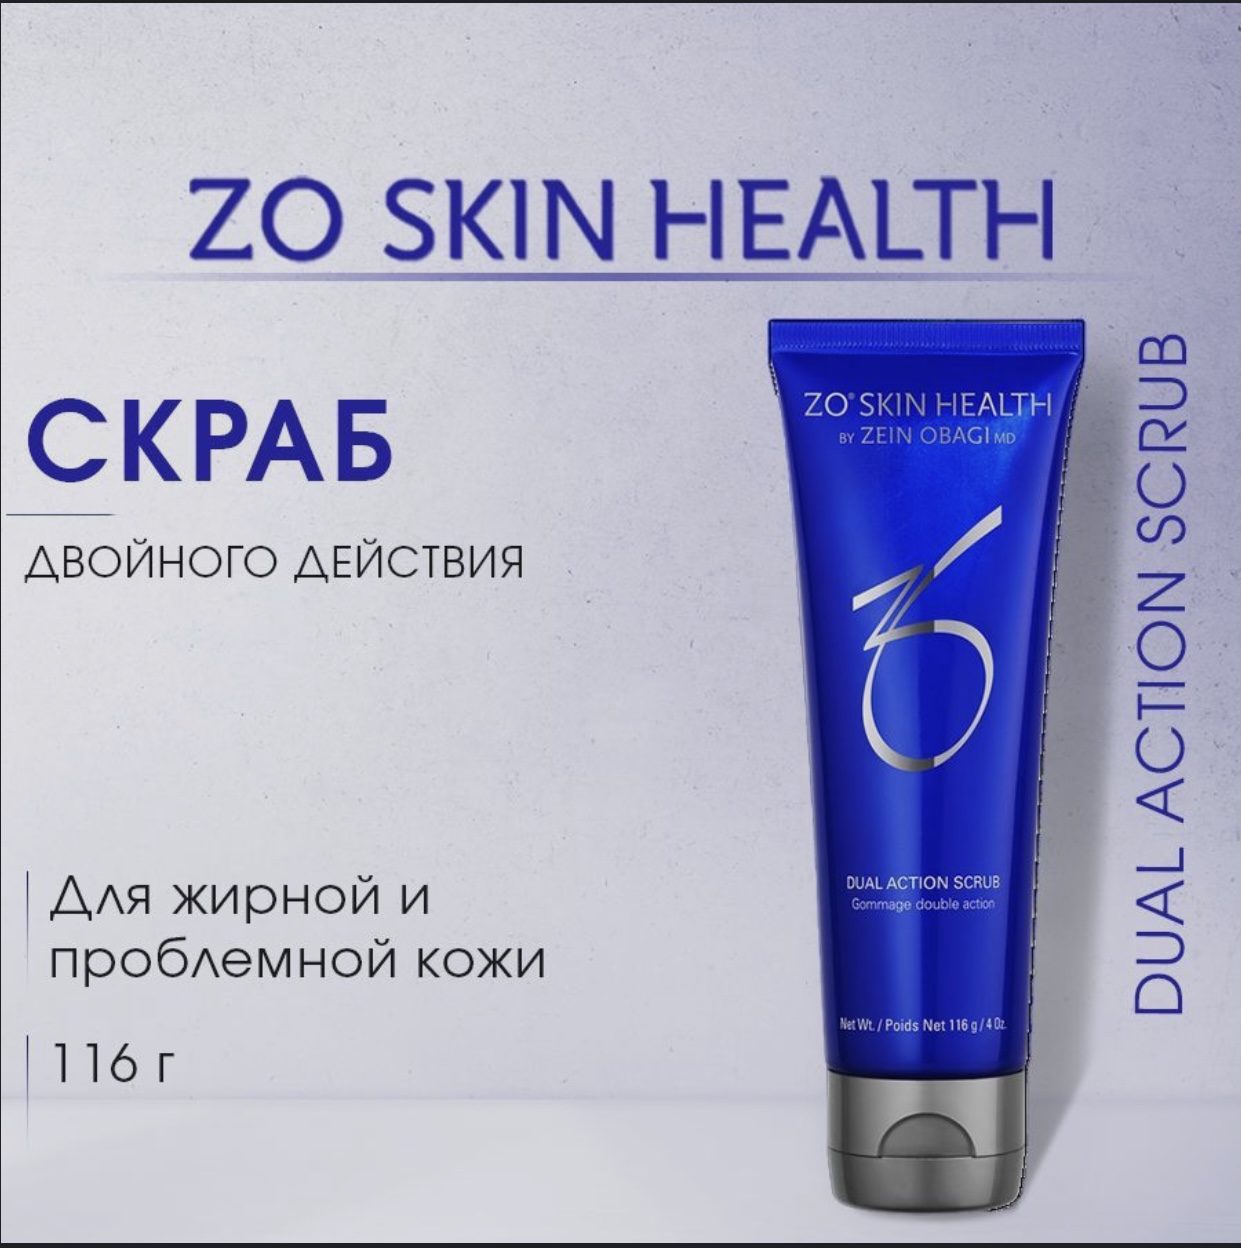 Скраб ZO Skin Health by Zein Obagi Dual Action Scrub двойного действия 116 г худеем за неделю чай похудин очищающий комплекс пак 2г 25